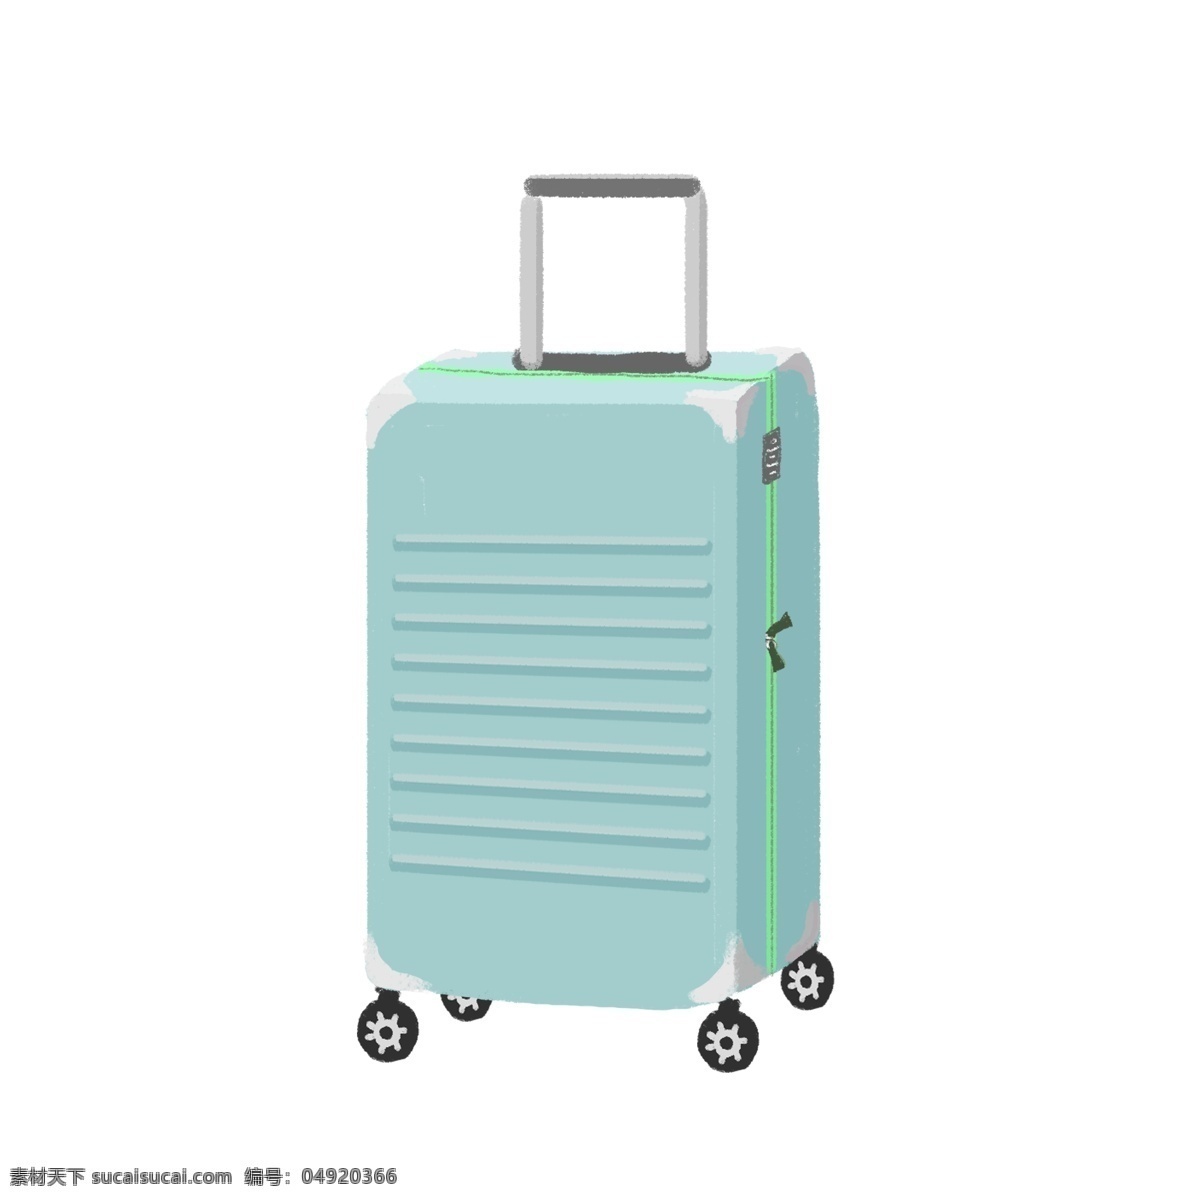 商用 手绘 简约 微 立体 行李箱 旅游出行 度假 元素 旅游